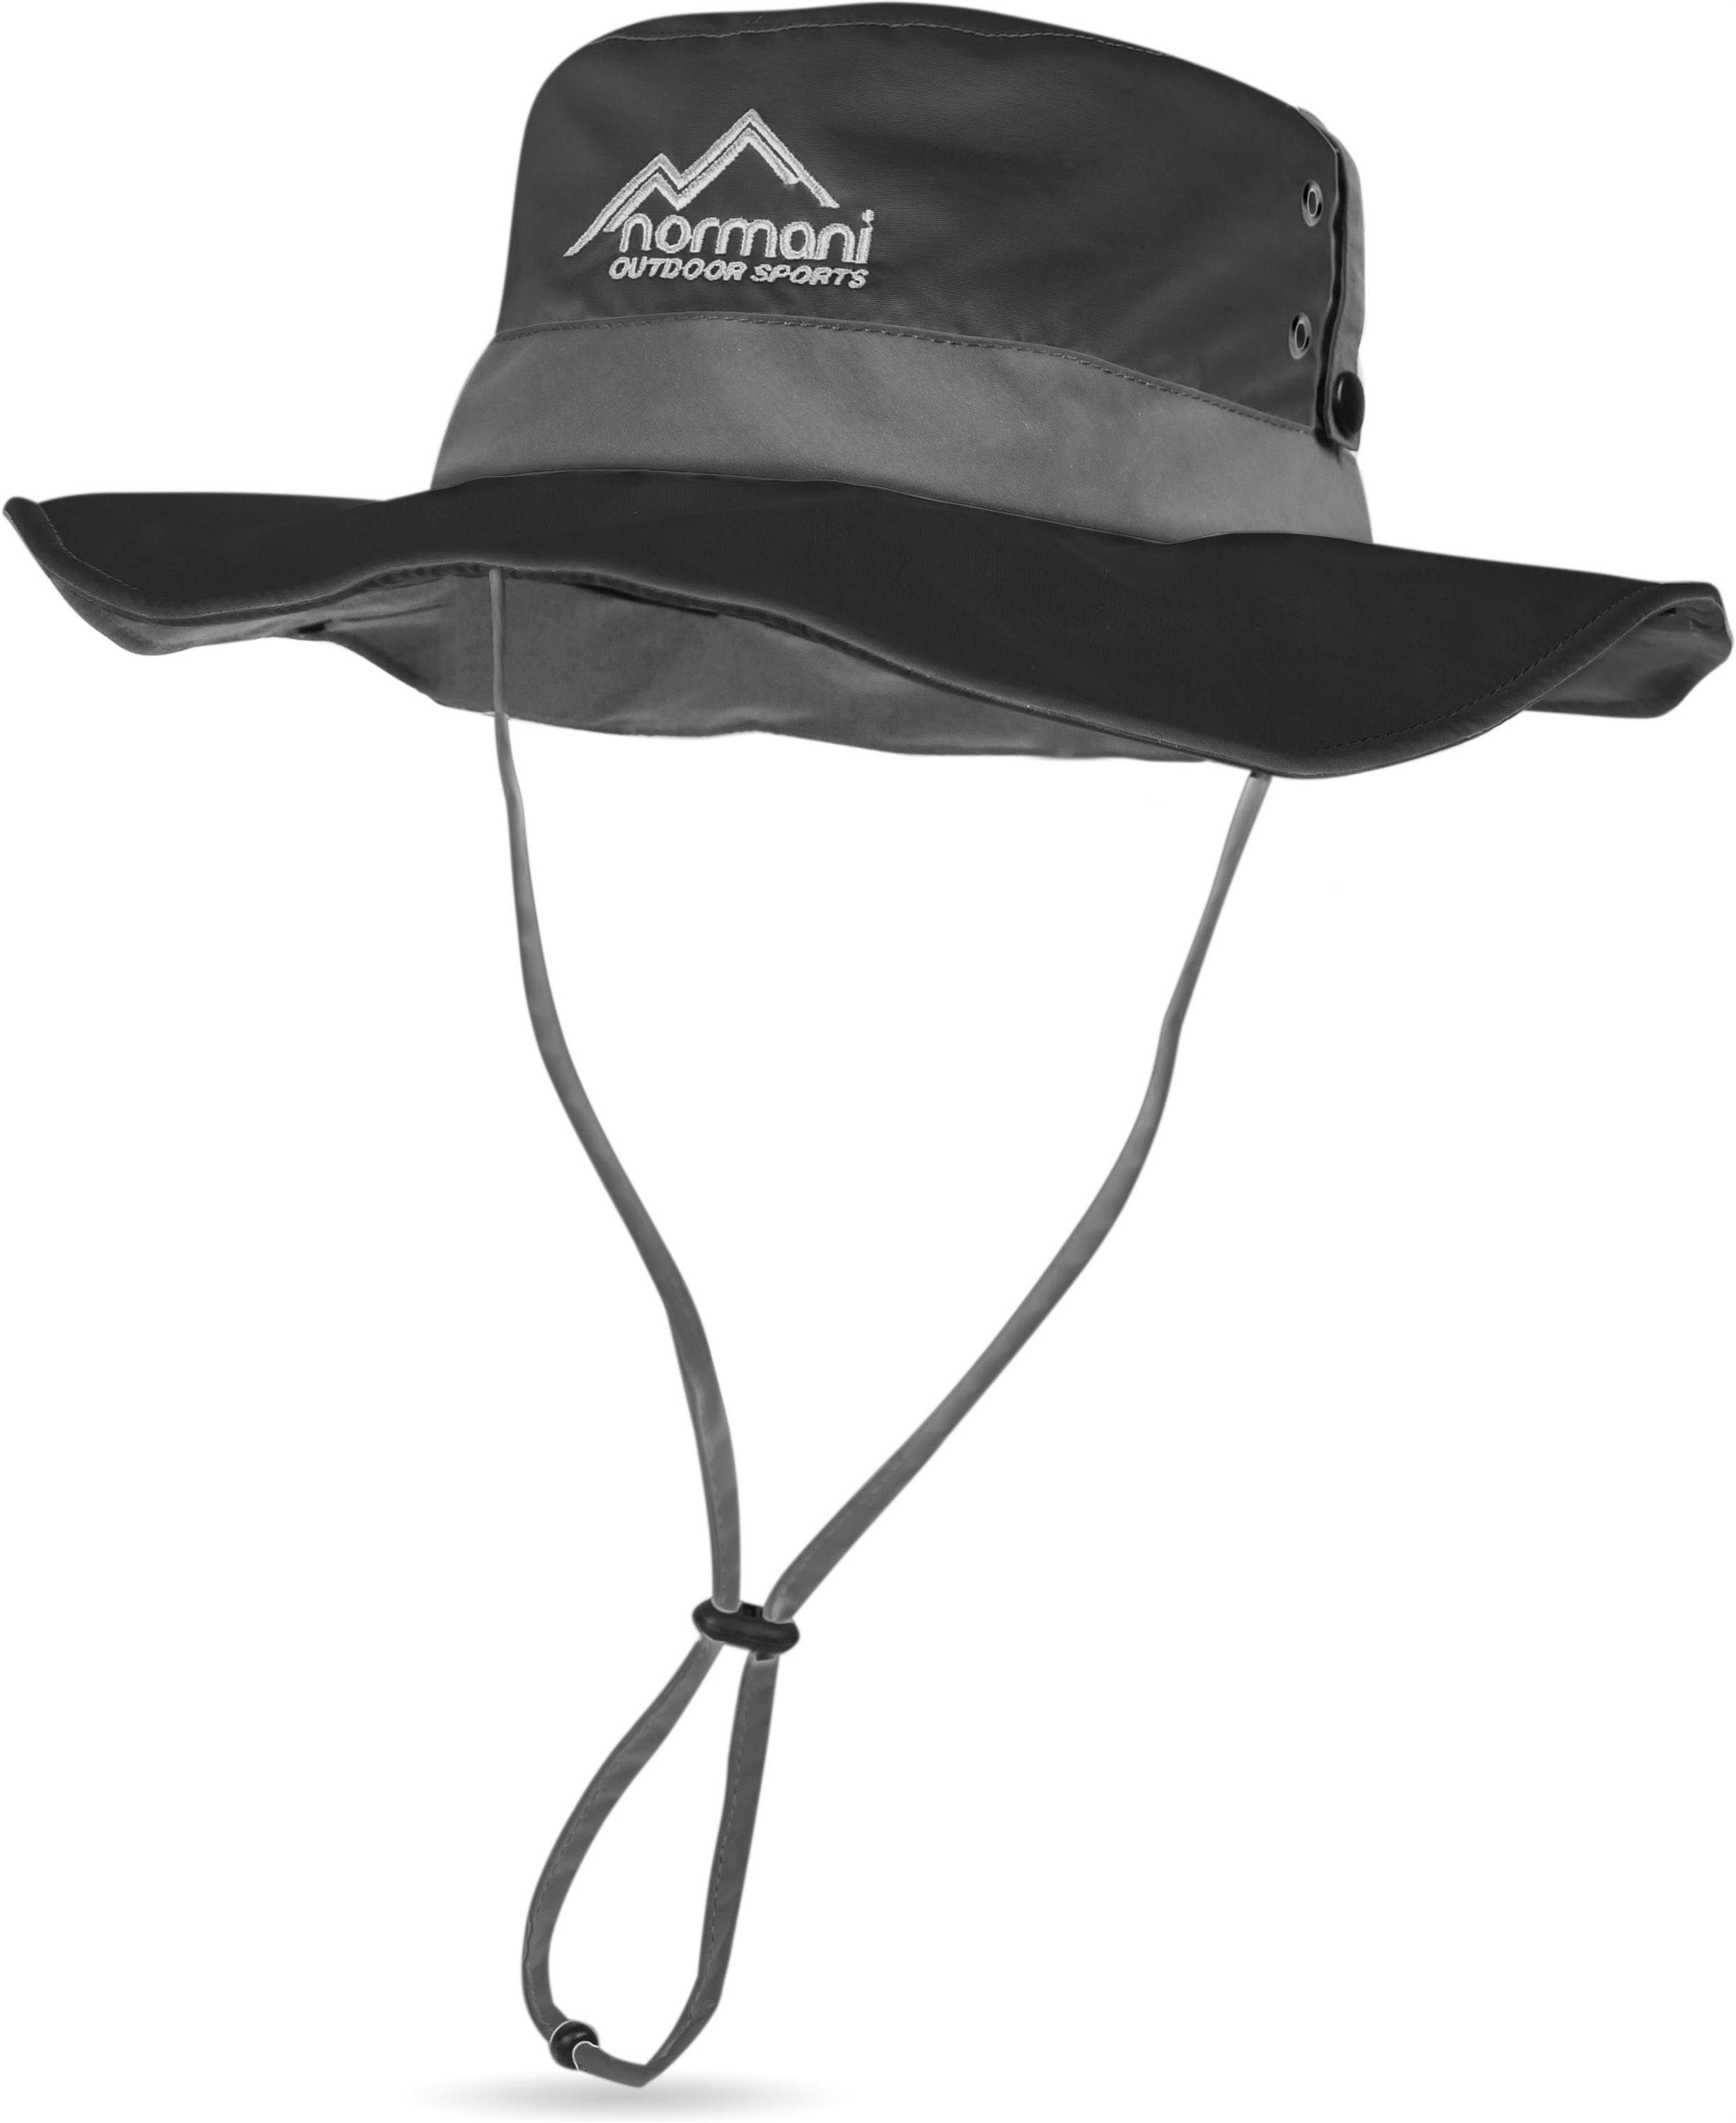 Fischerhut Schutz normani Sonnenhut mit Outdoor-Hut + Schwarz Reisehut 40 Wanderhut Shady leichter Outdoorhut UV Sommerhut